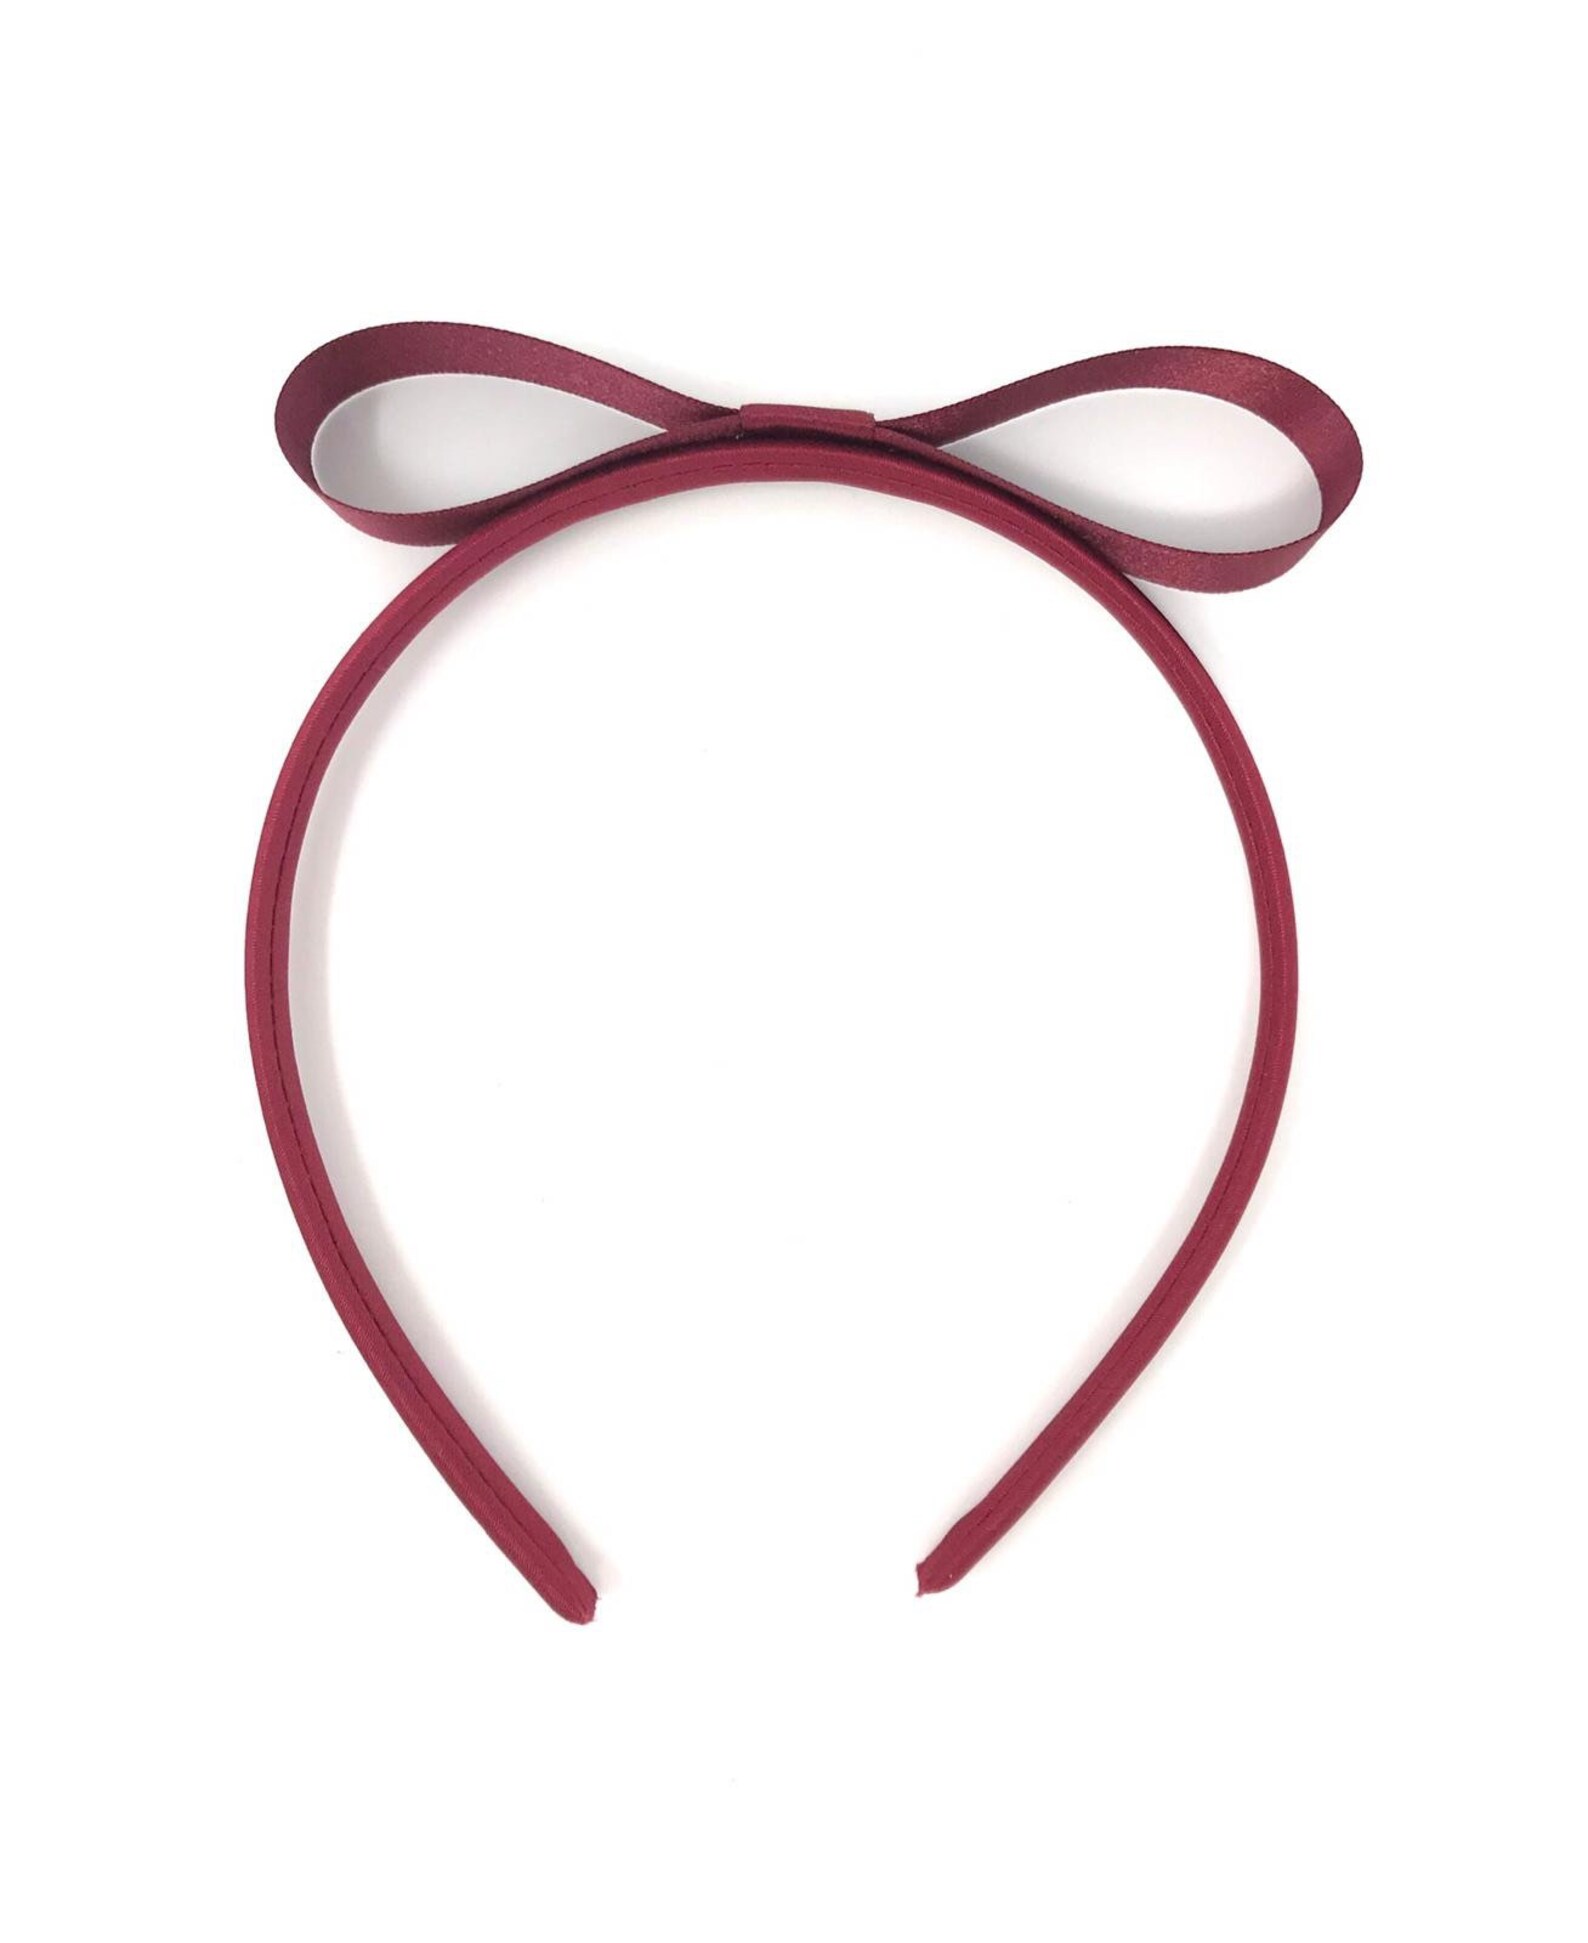 Burgundy Matilda Style Hairband Aliceband Headband Hairband | Etsy